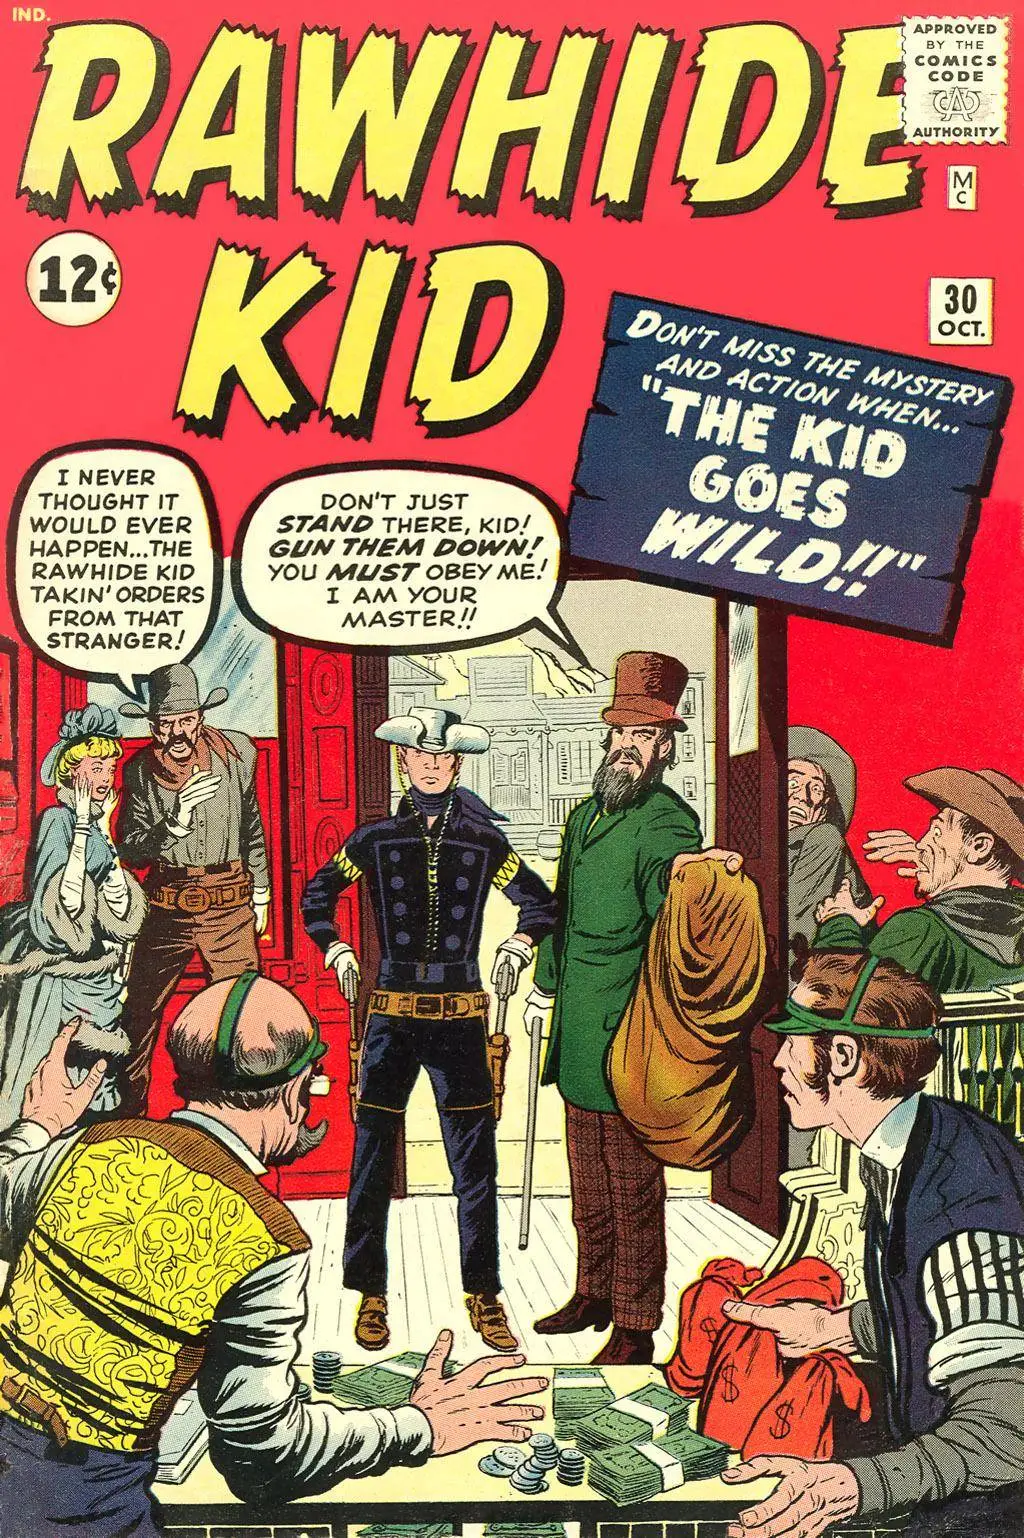 Rawhide Kid v1 030 1962